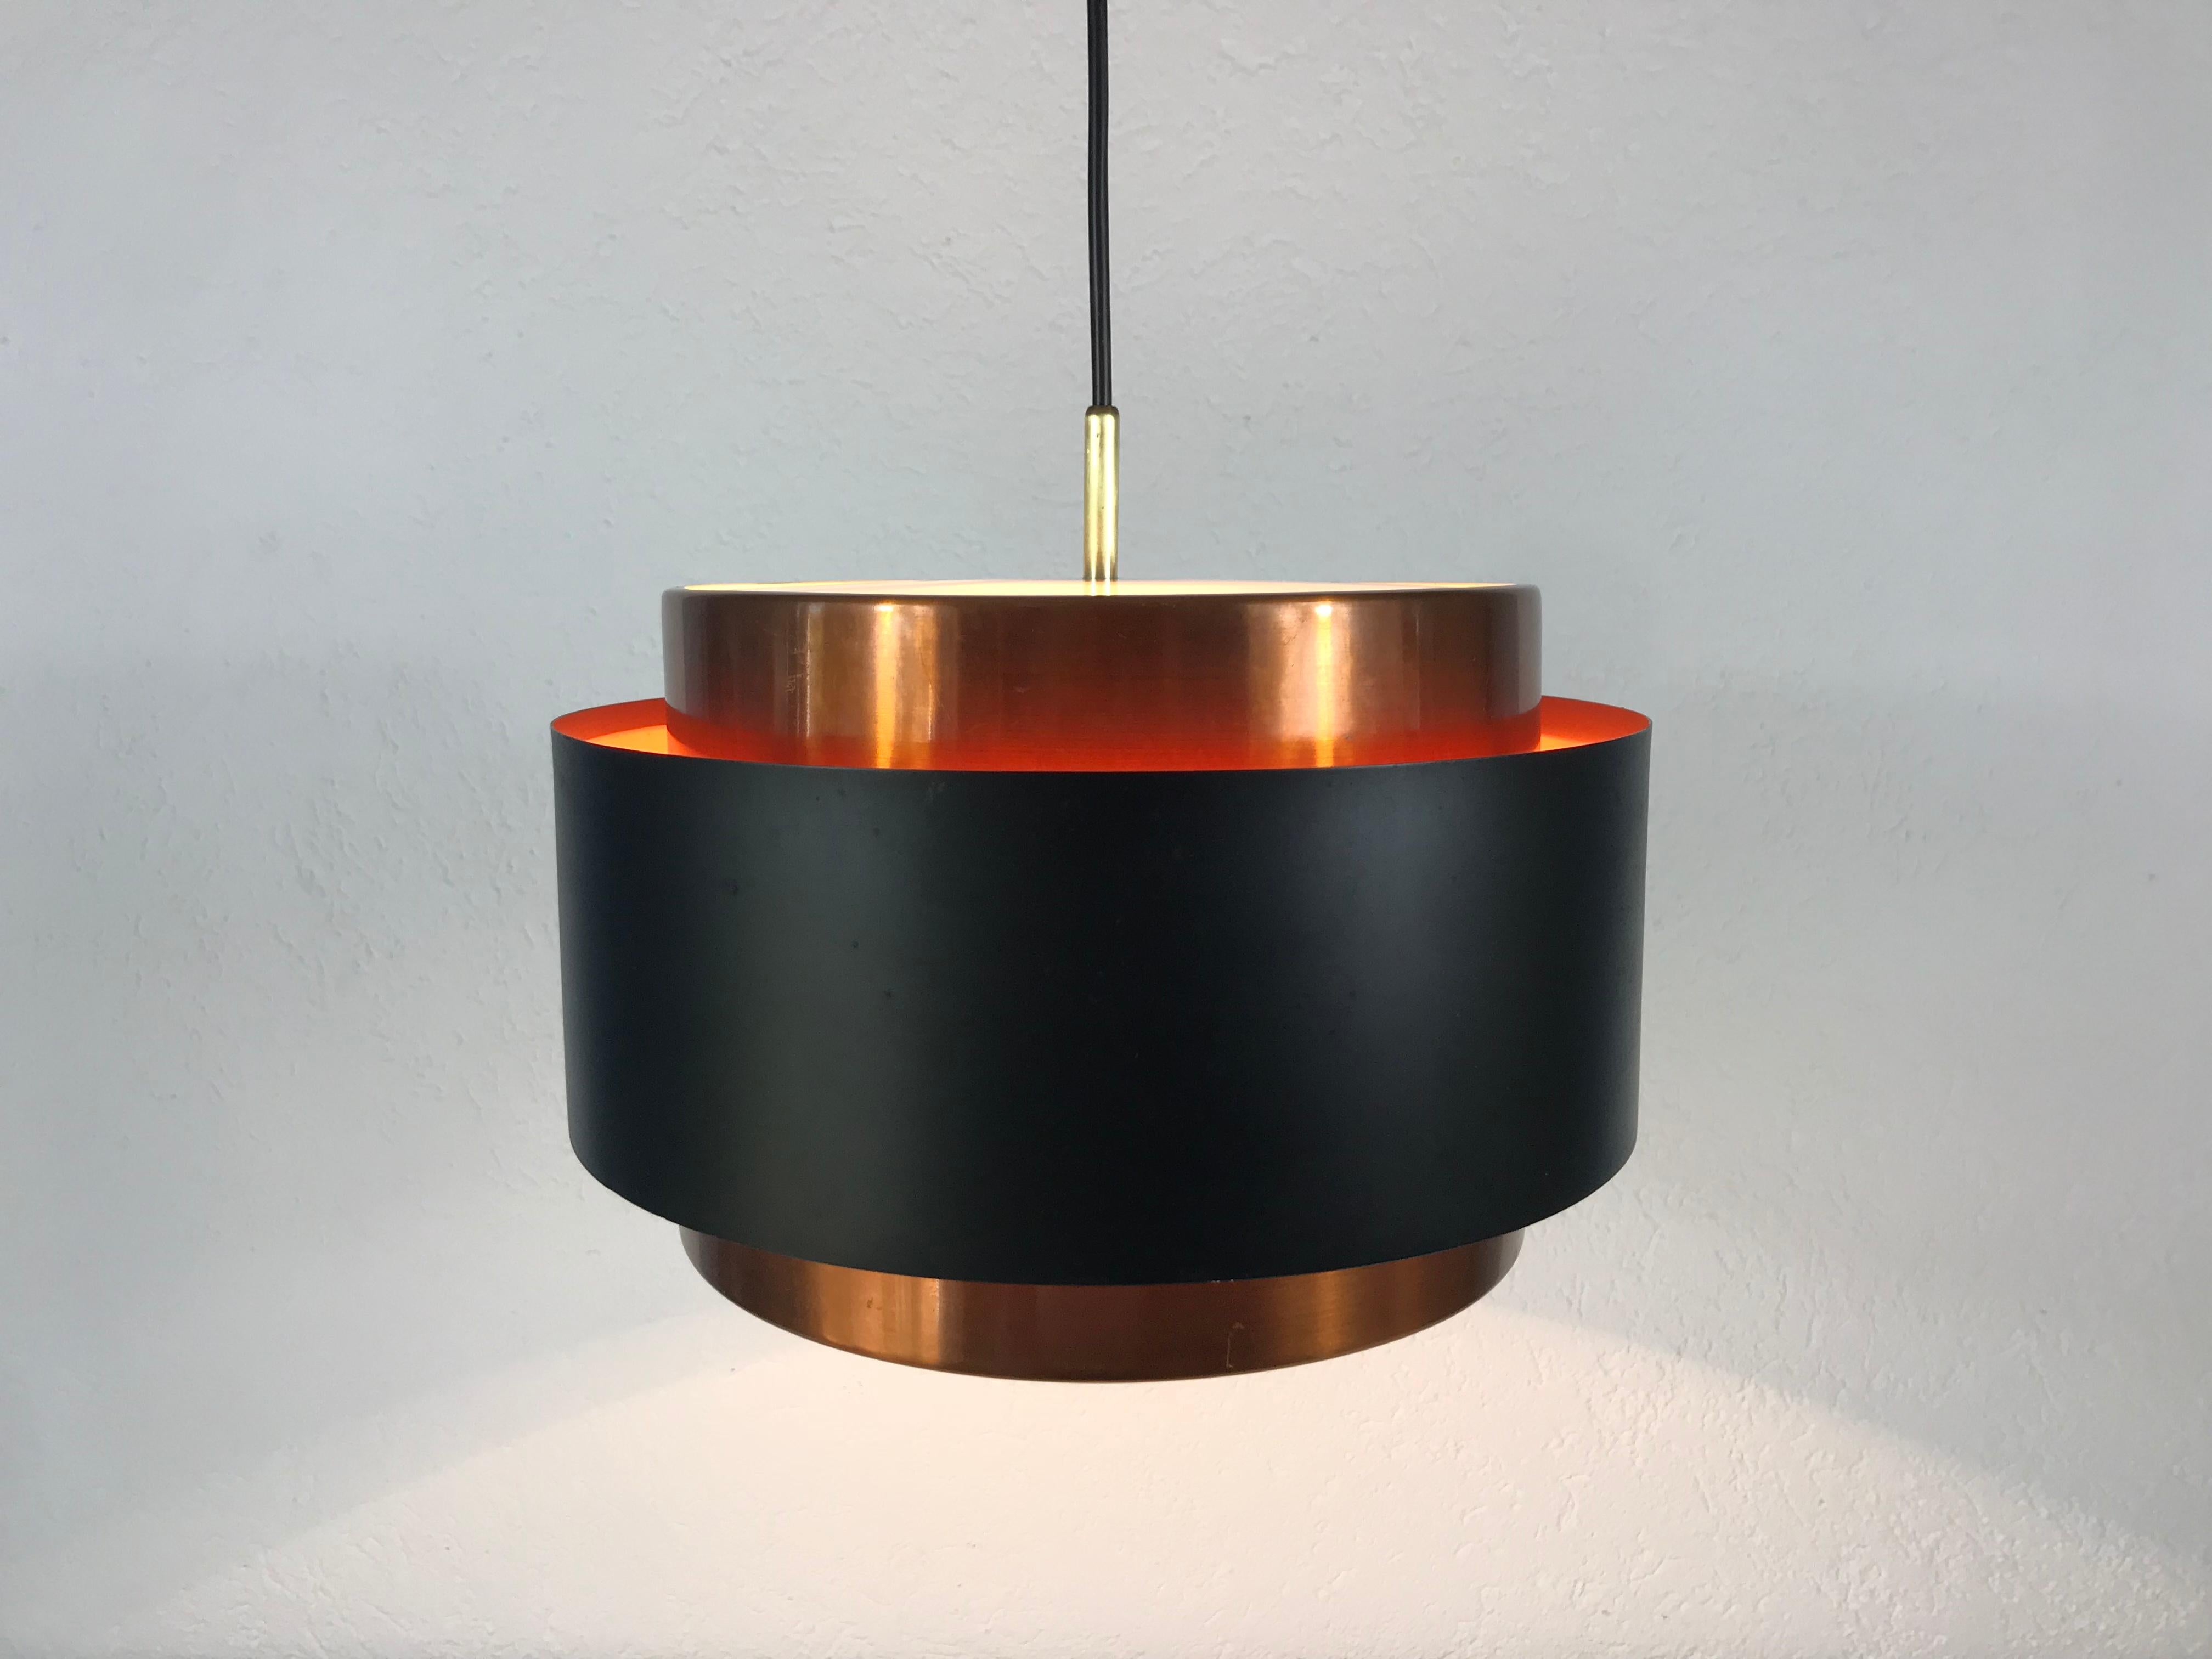 Lampe pendante noire et cuivre de Fog et Mørup fabriquée au Danemark dans les années 1960. Le luminaire donne une très belle lumière. Il est fabriqué à partir d'aluminium et de cuivre fins.

Le luminaire nécessite une ampoule E27.
  